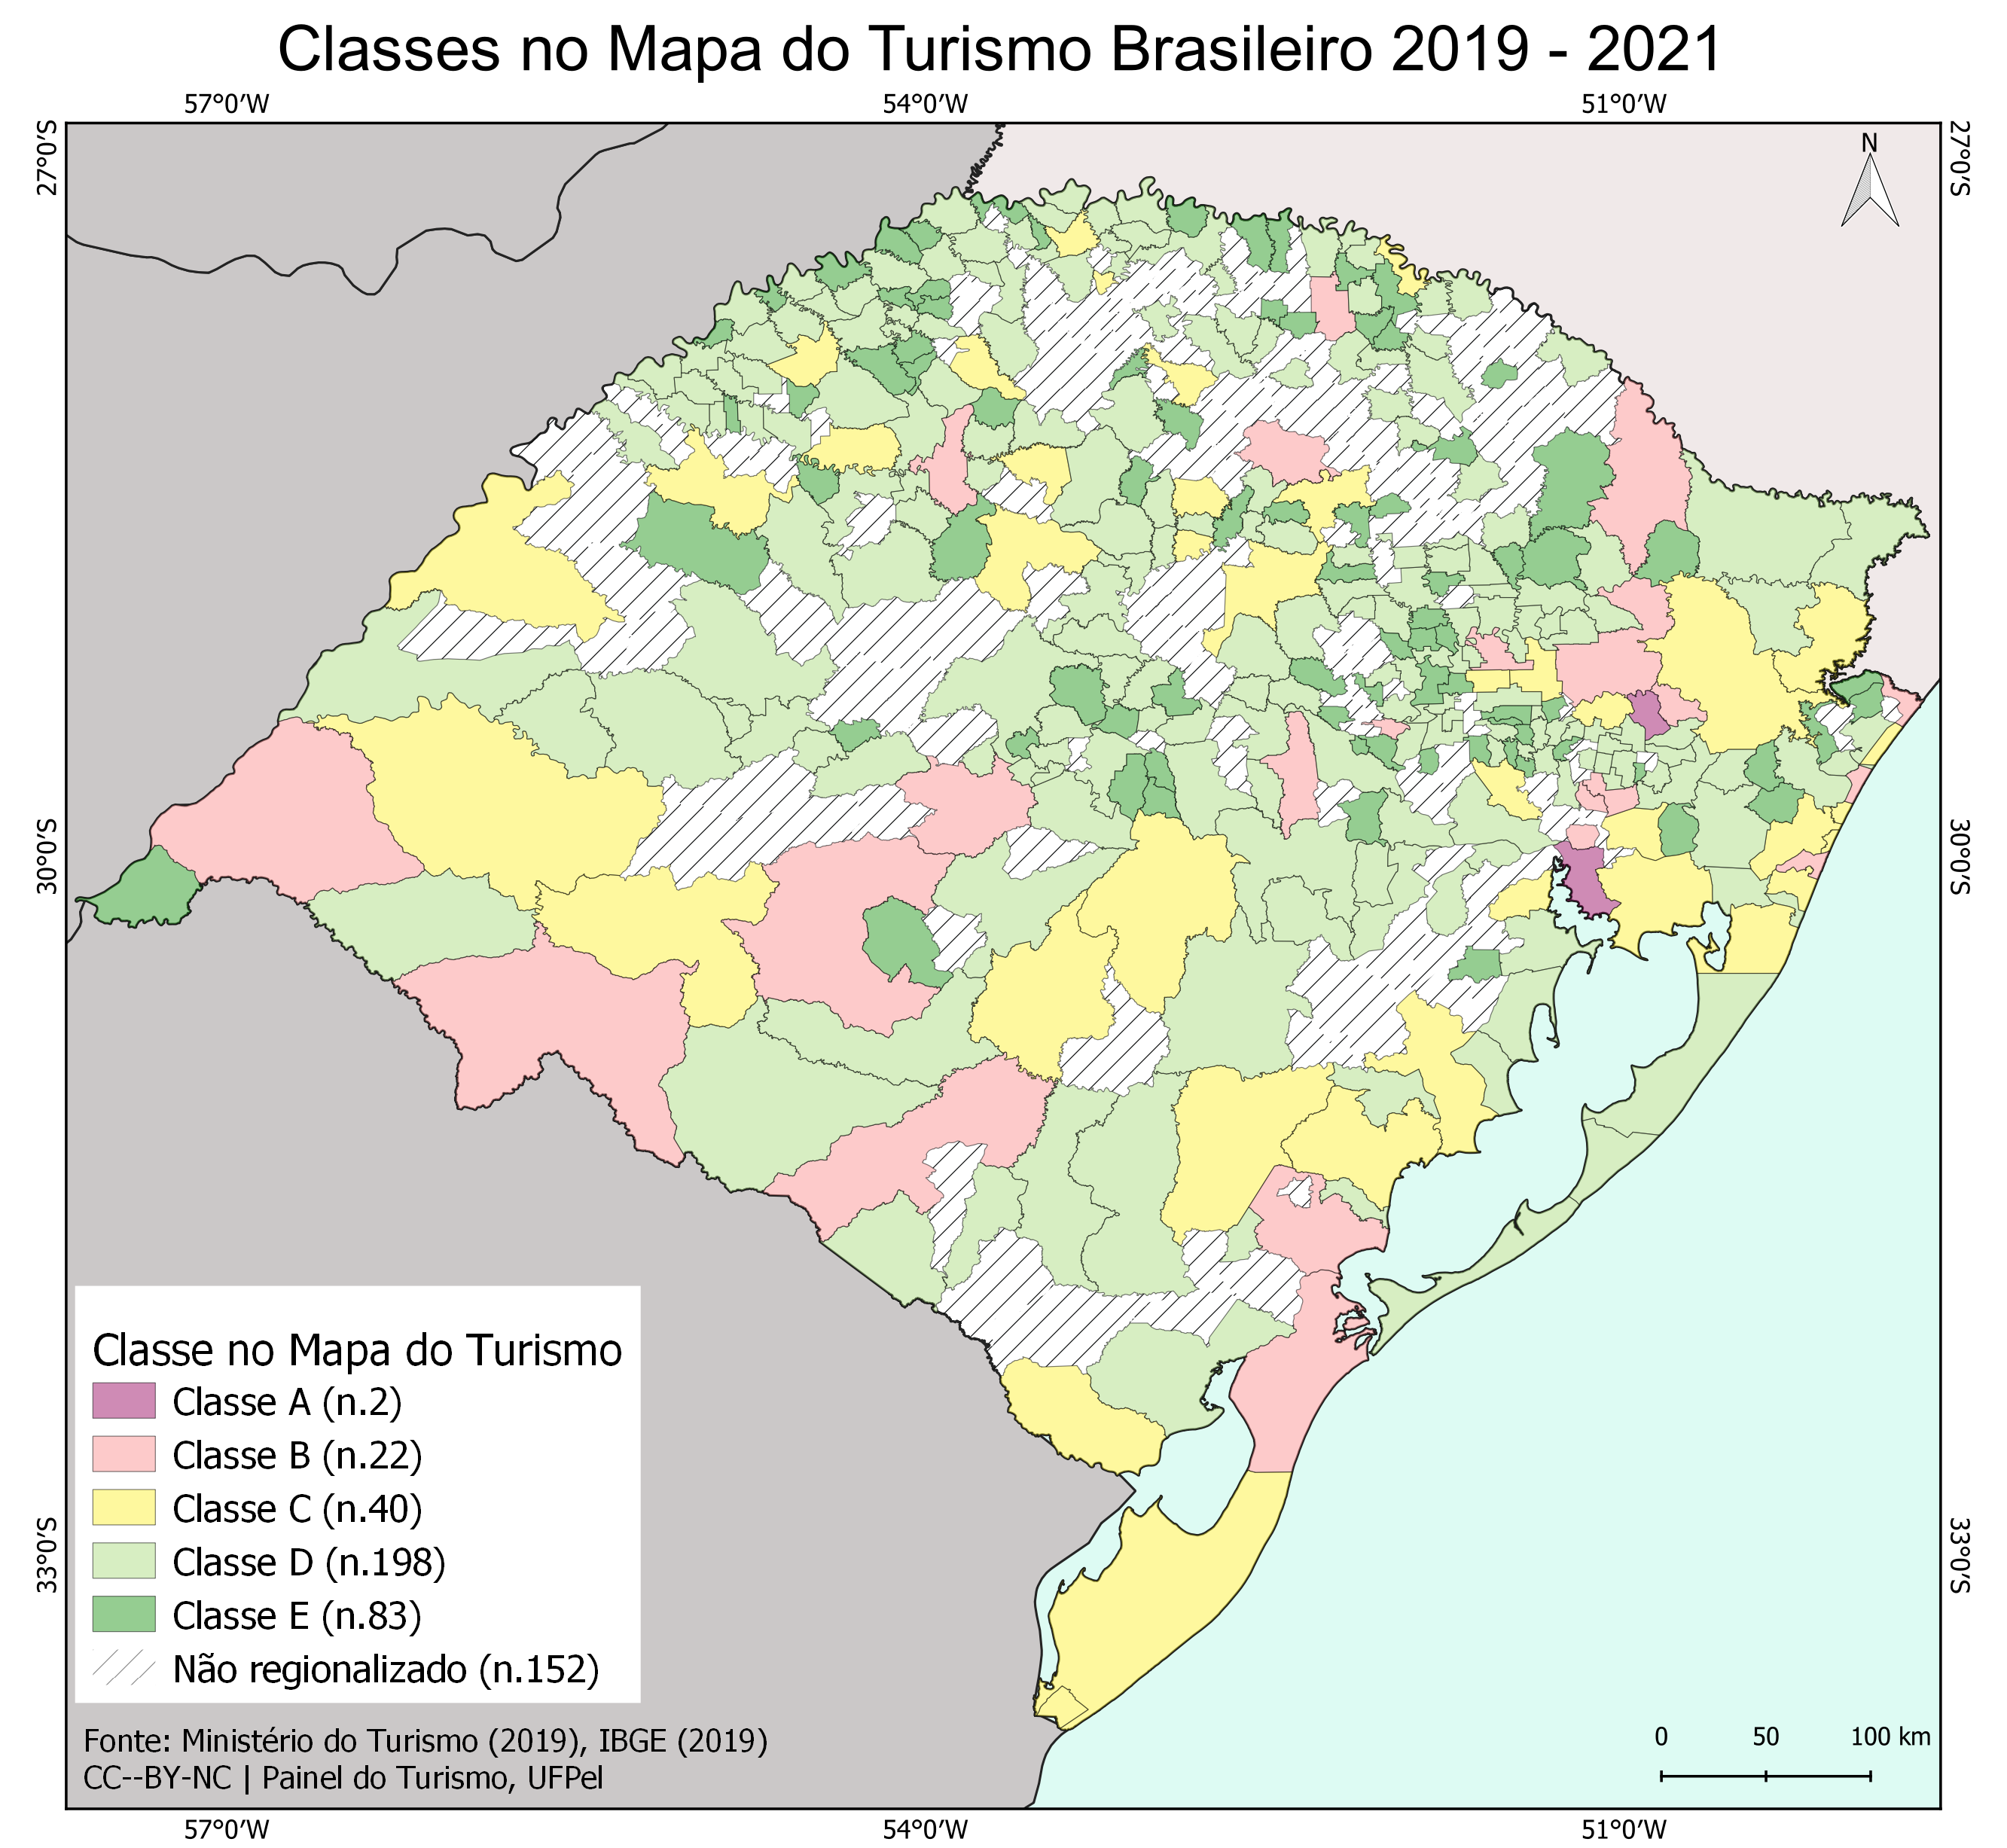 Classes no Mapa do Turismo Brasileiro 2019-2021